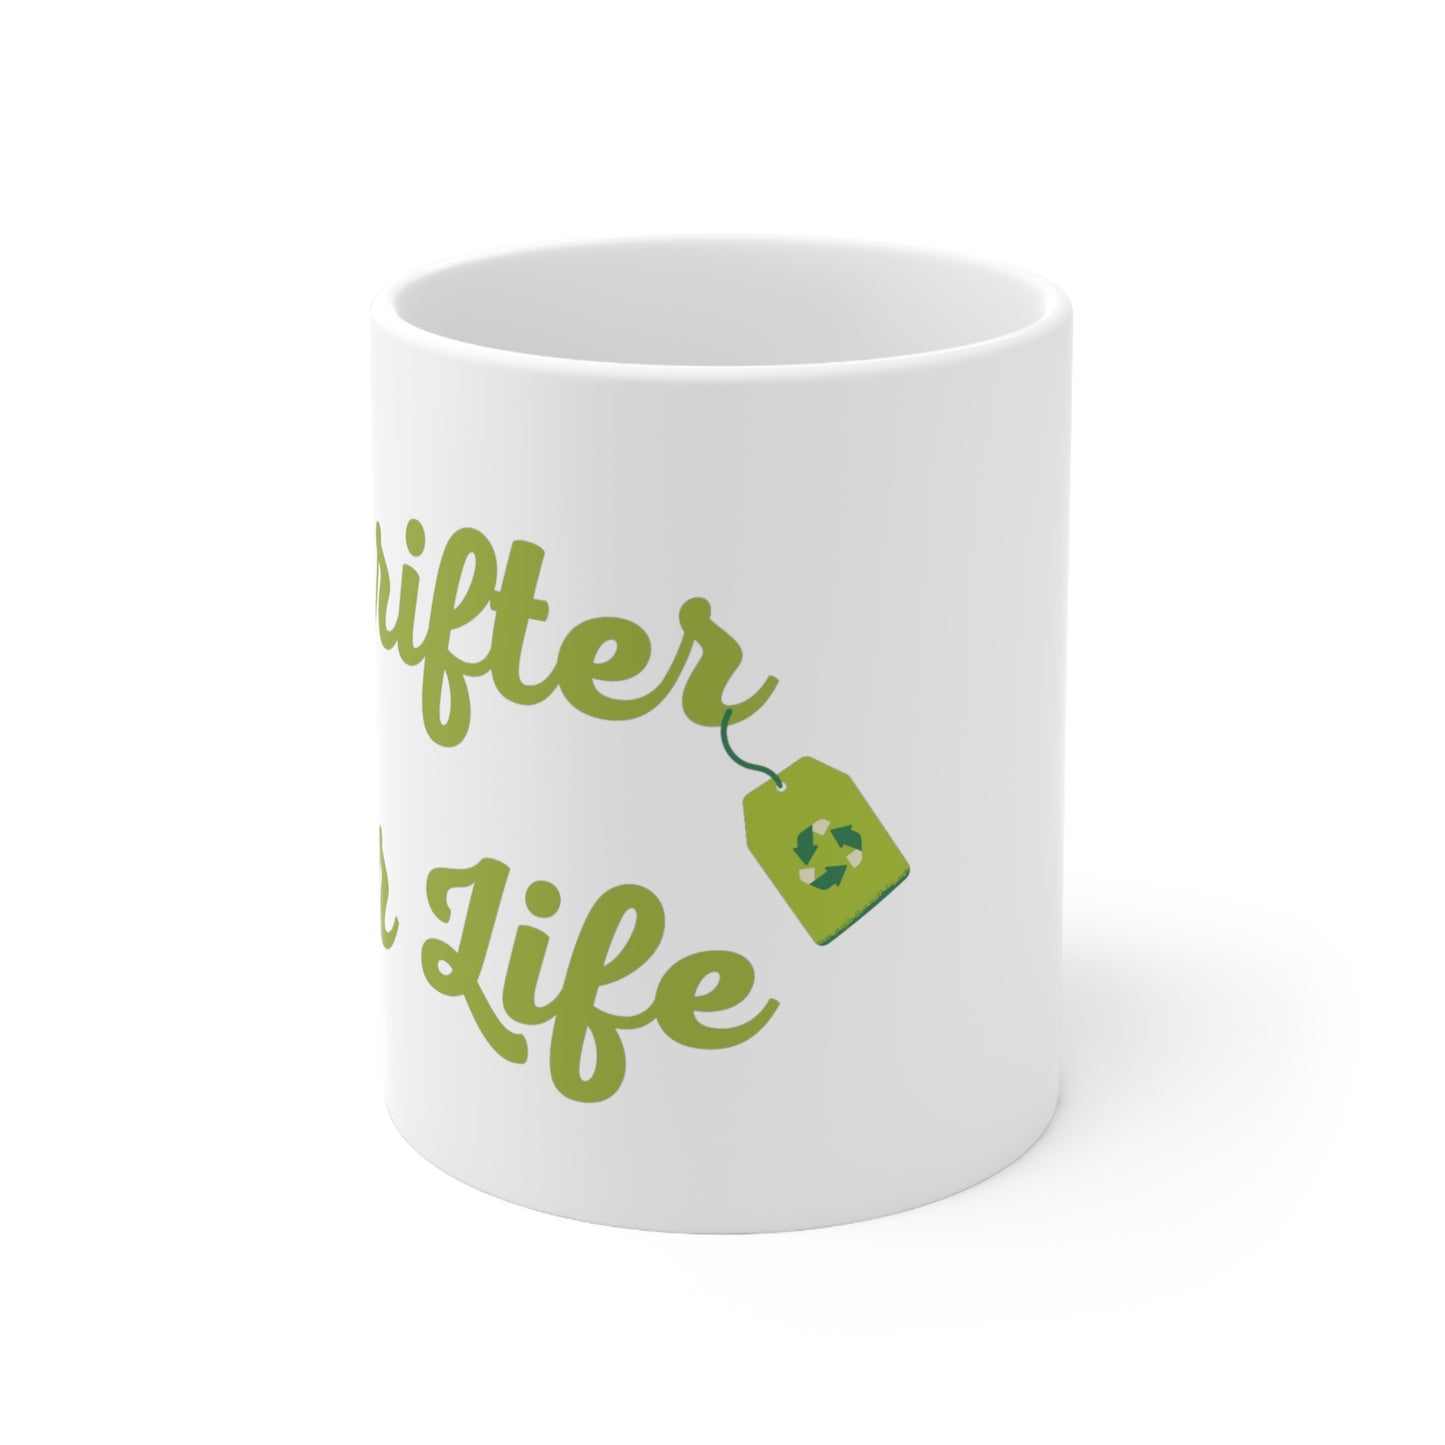 Thrifter for Life 11oz Mug